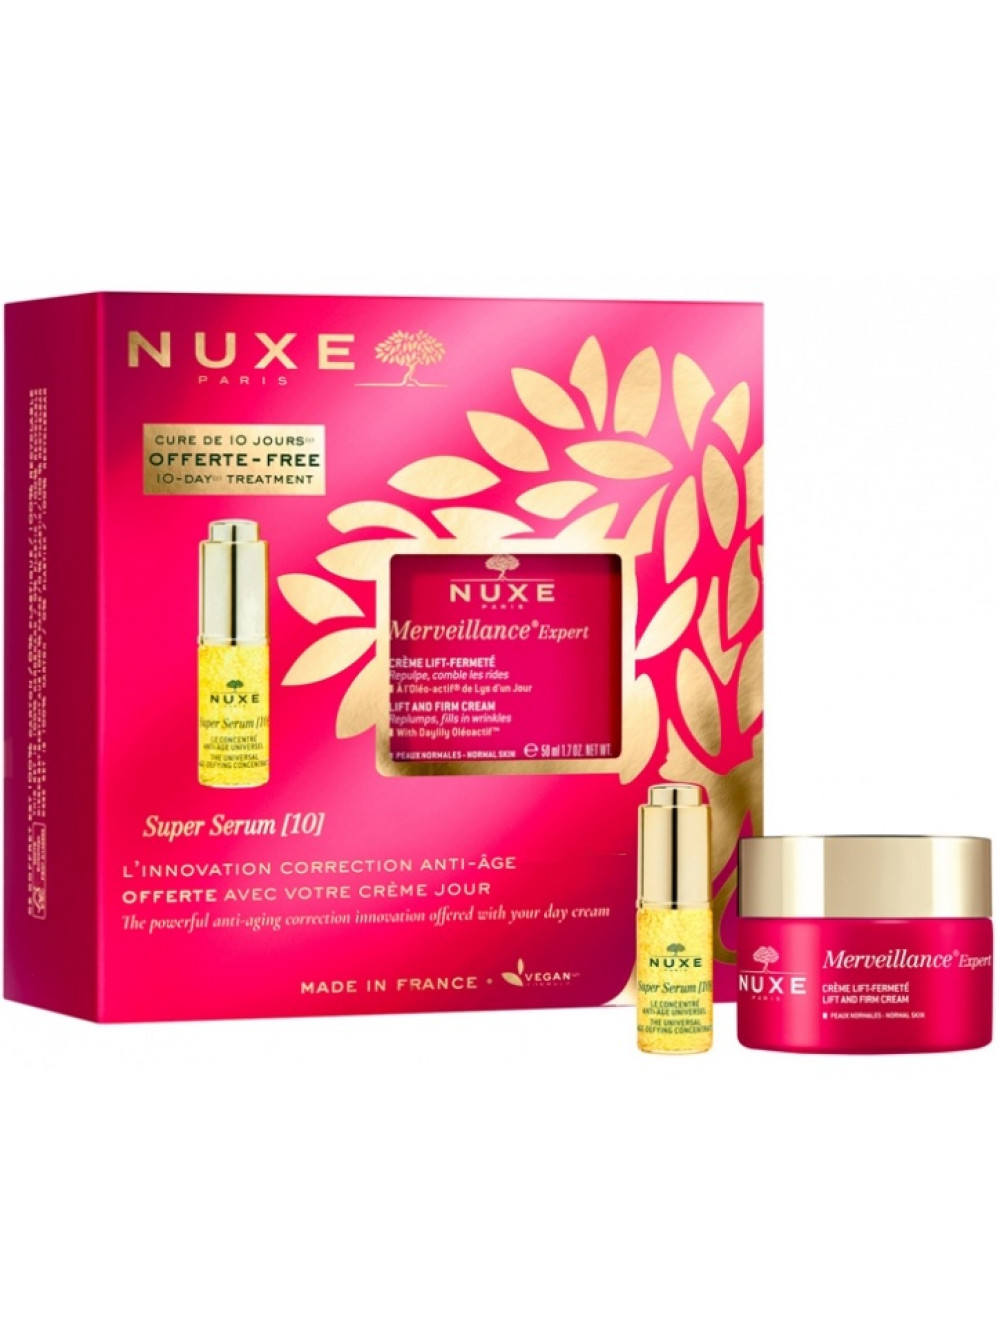 Купить Nuxe Набор: Укрепляющий лифтинг крем, 50 мл + Антивозрастная сыворотка для лица Super Serum (10), 5 мл (Nuxe, Merveillance expert), Франция